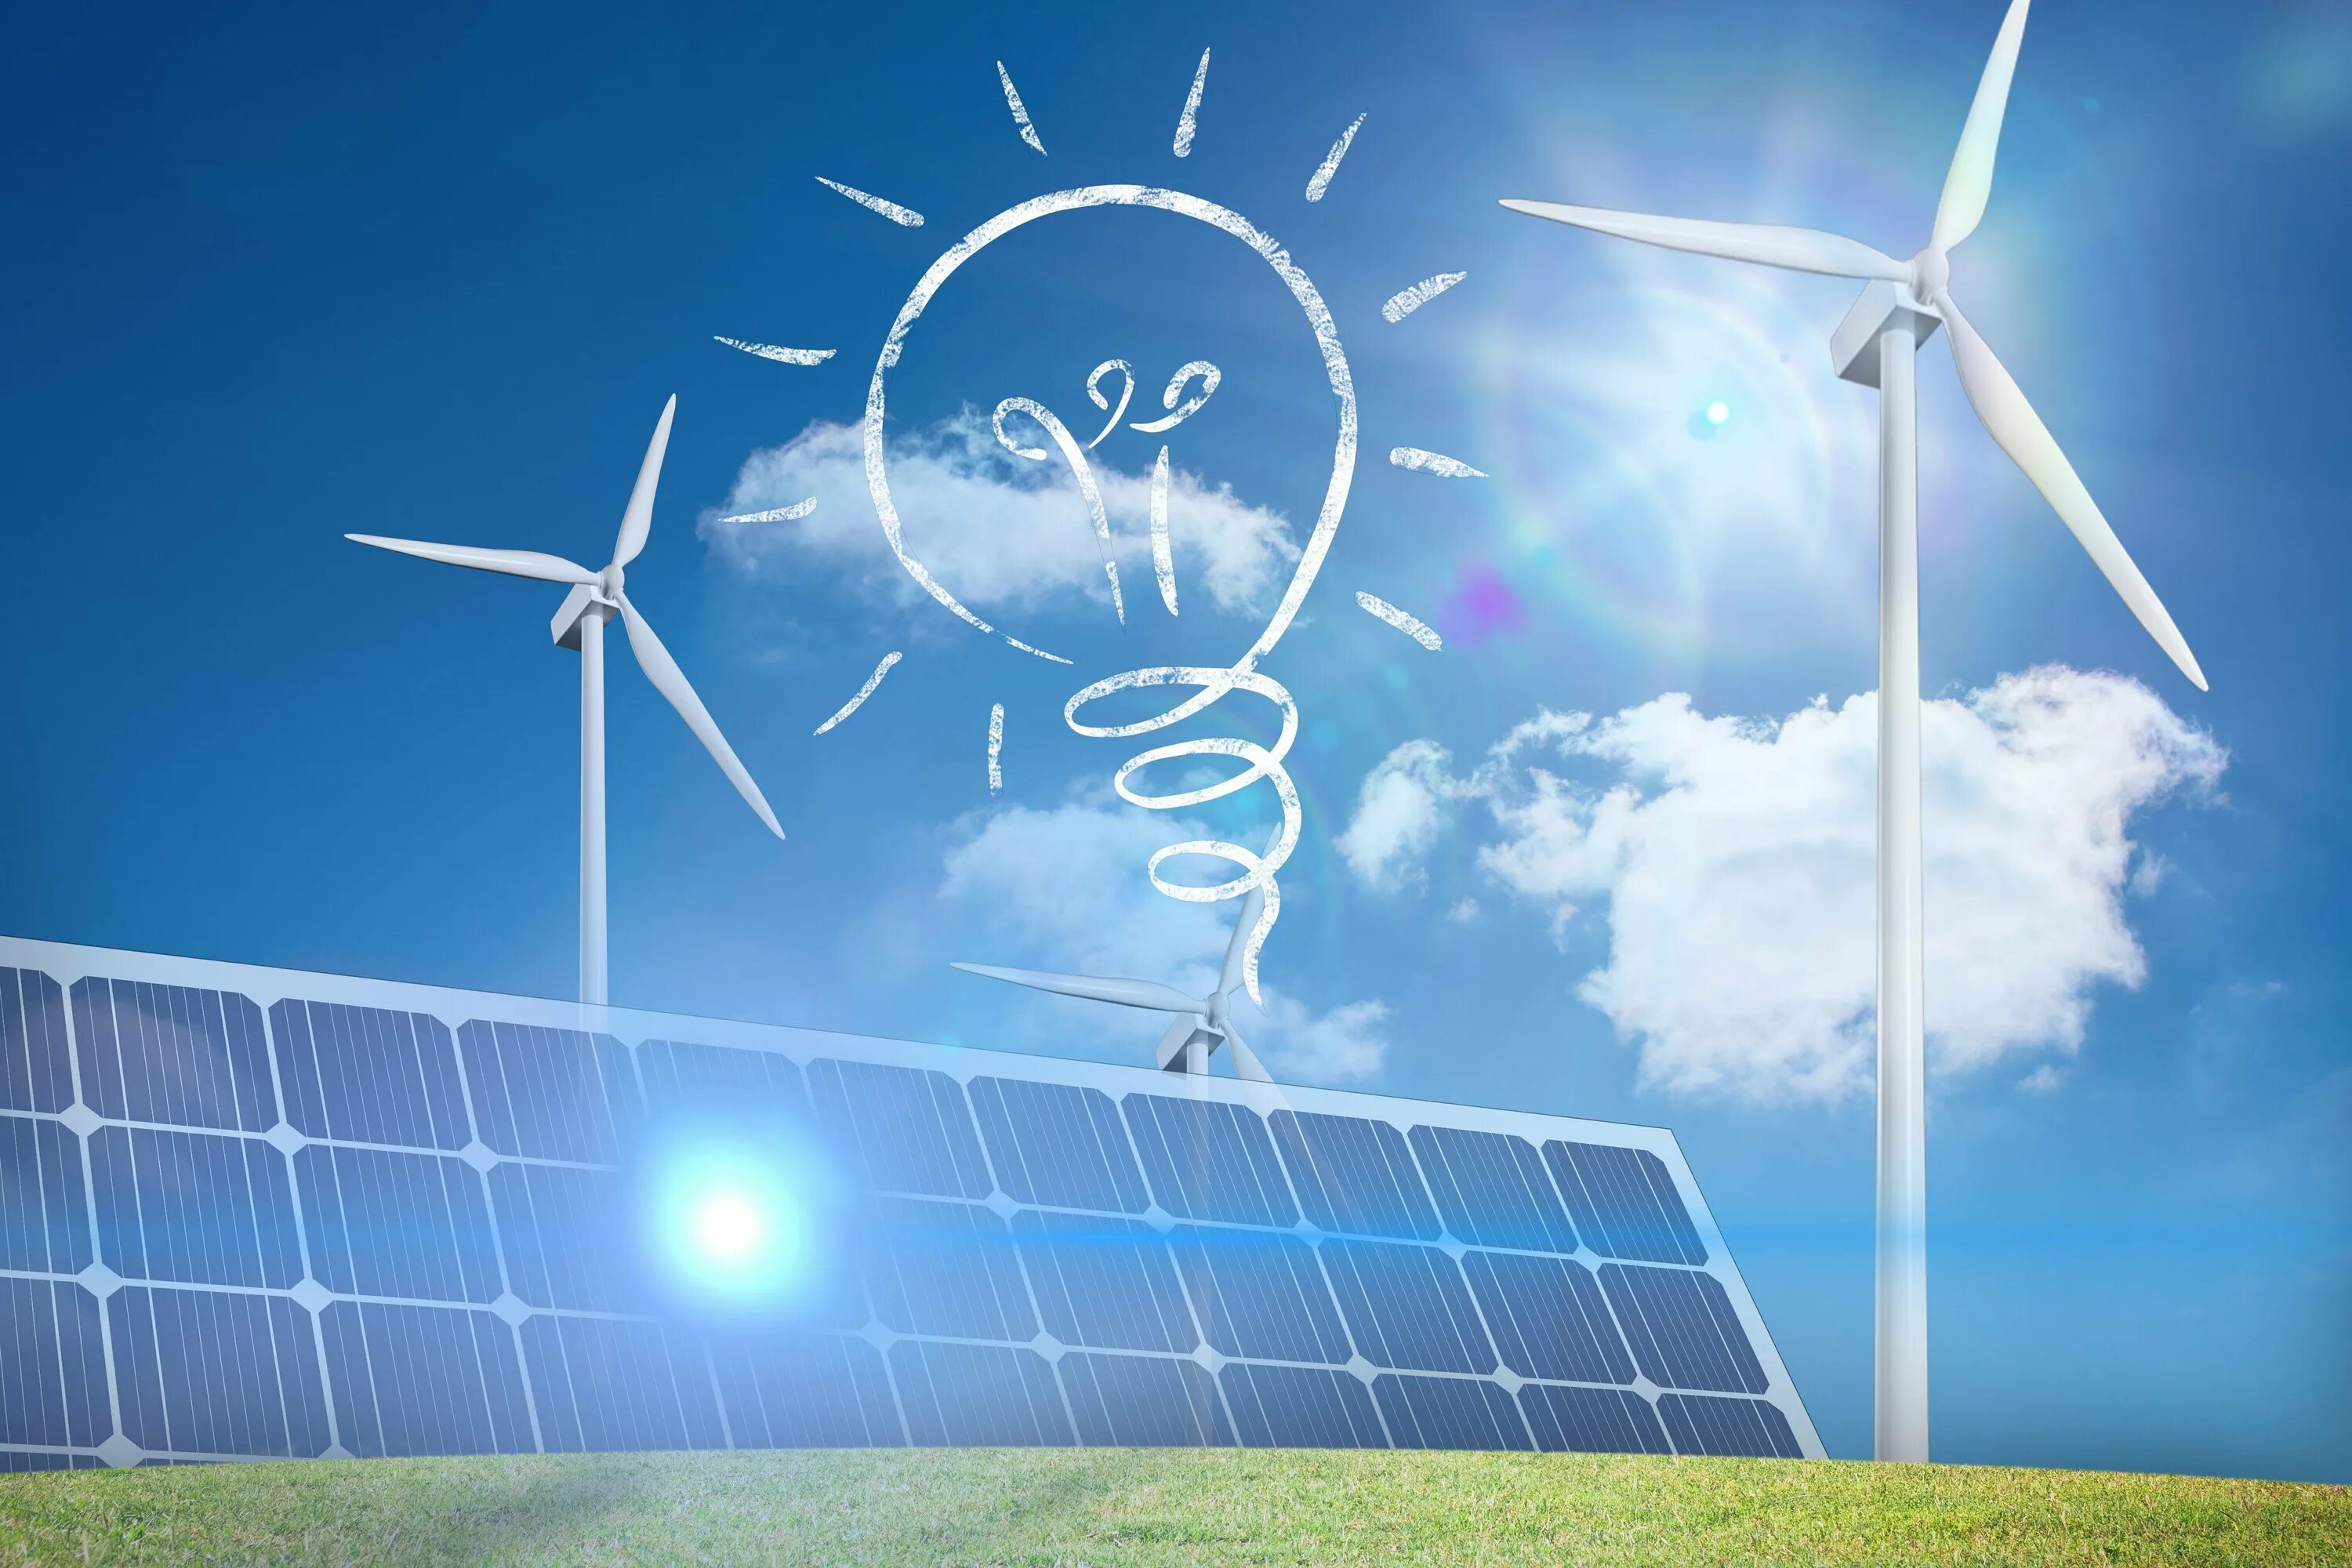 Развитие новых источников энергии. Возобновляемые источники энергии (ВИЭ). Ветряки и солнечные батареи. Альтернативная Энергетика. Солнечные и ветровые электростанции.